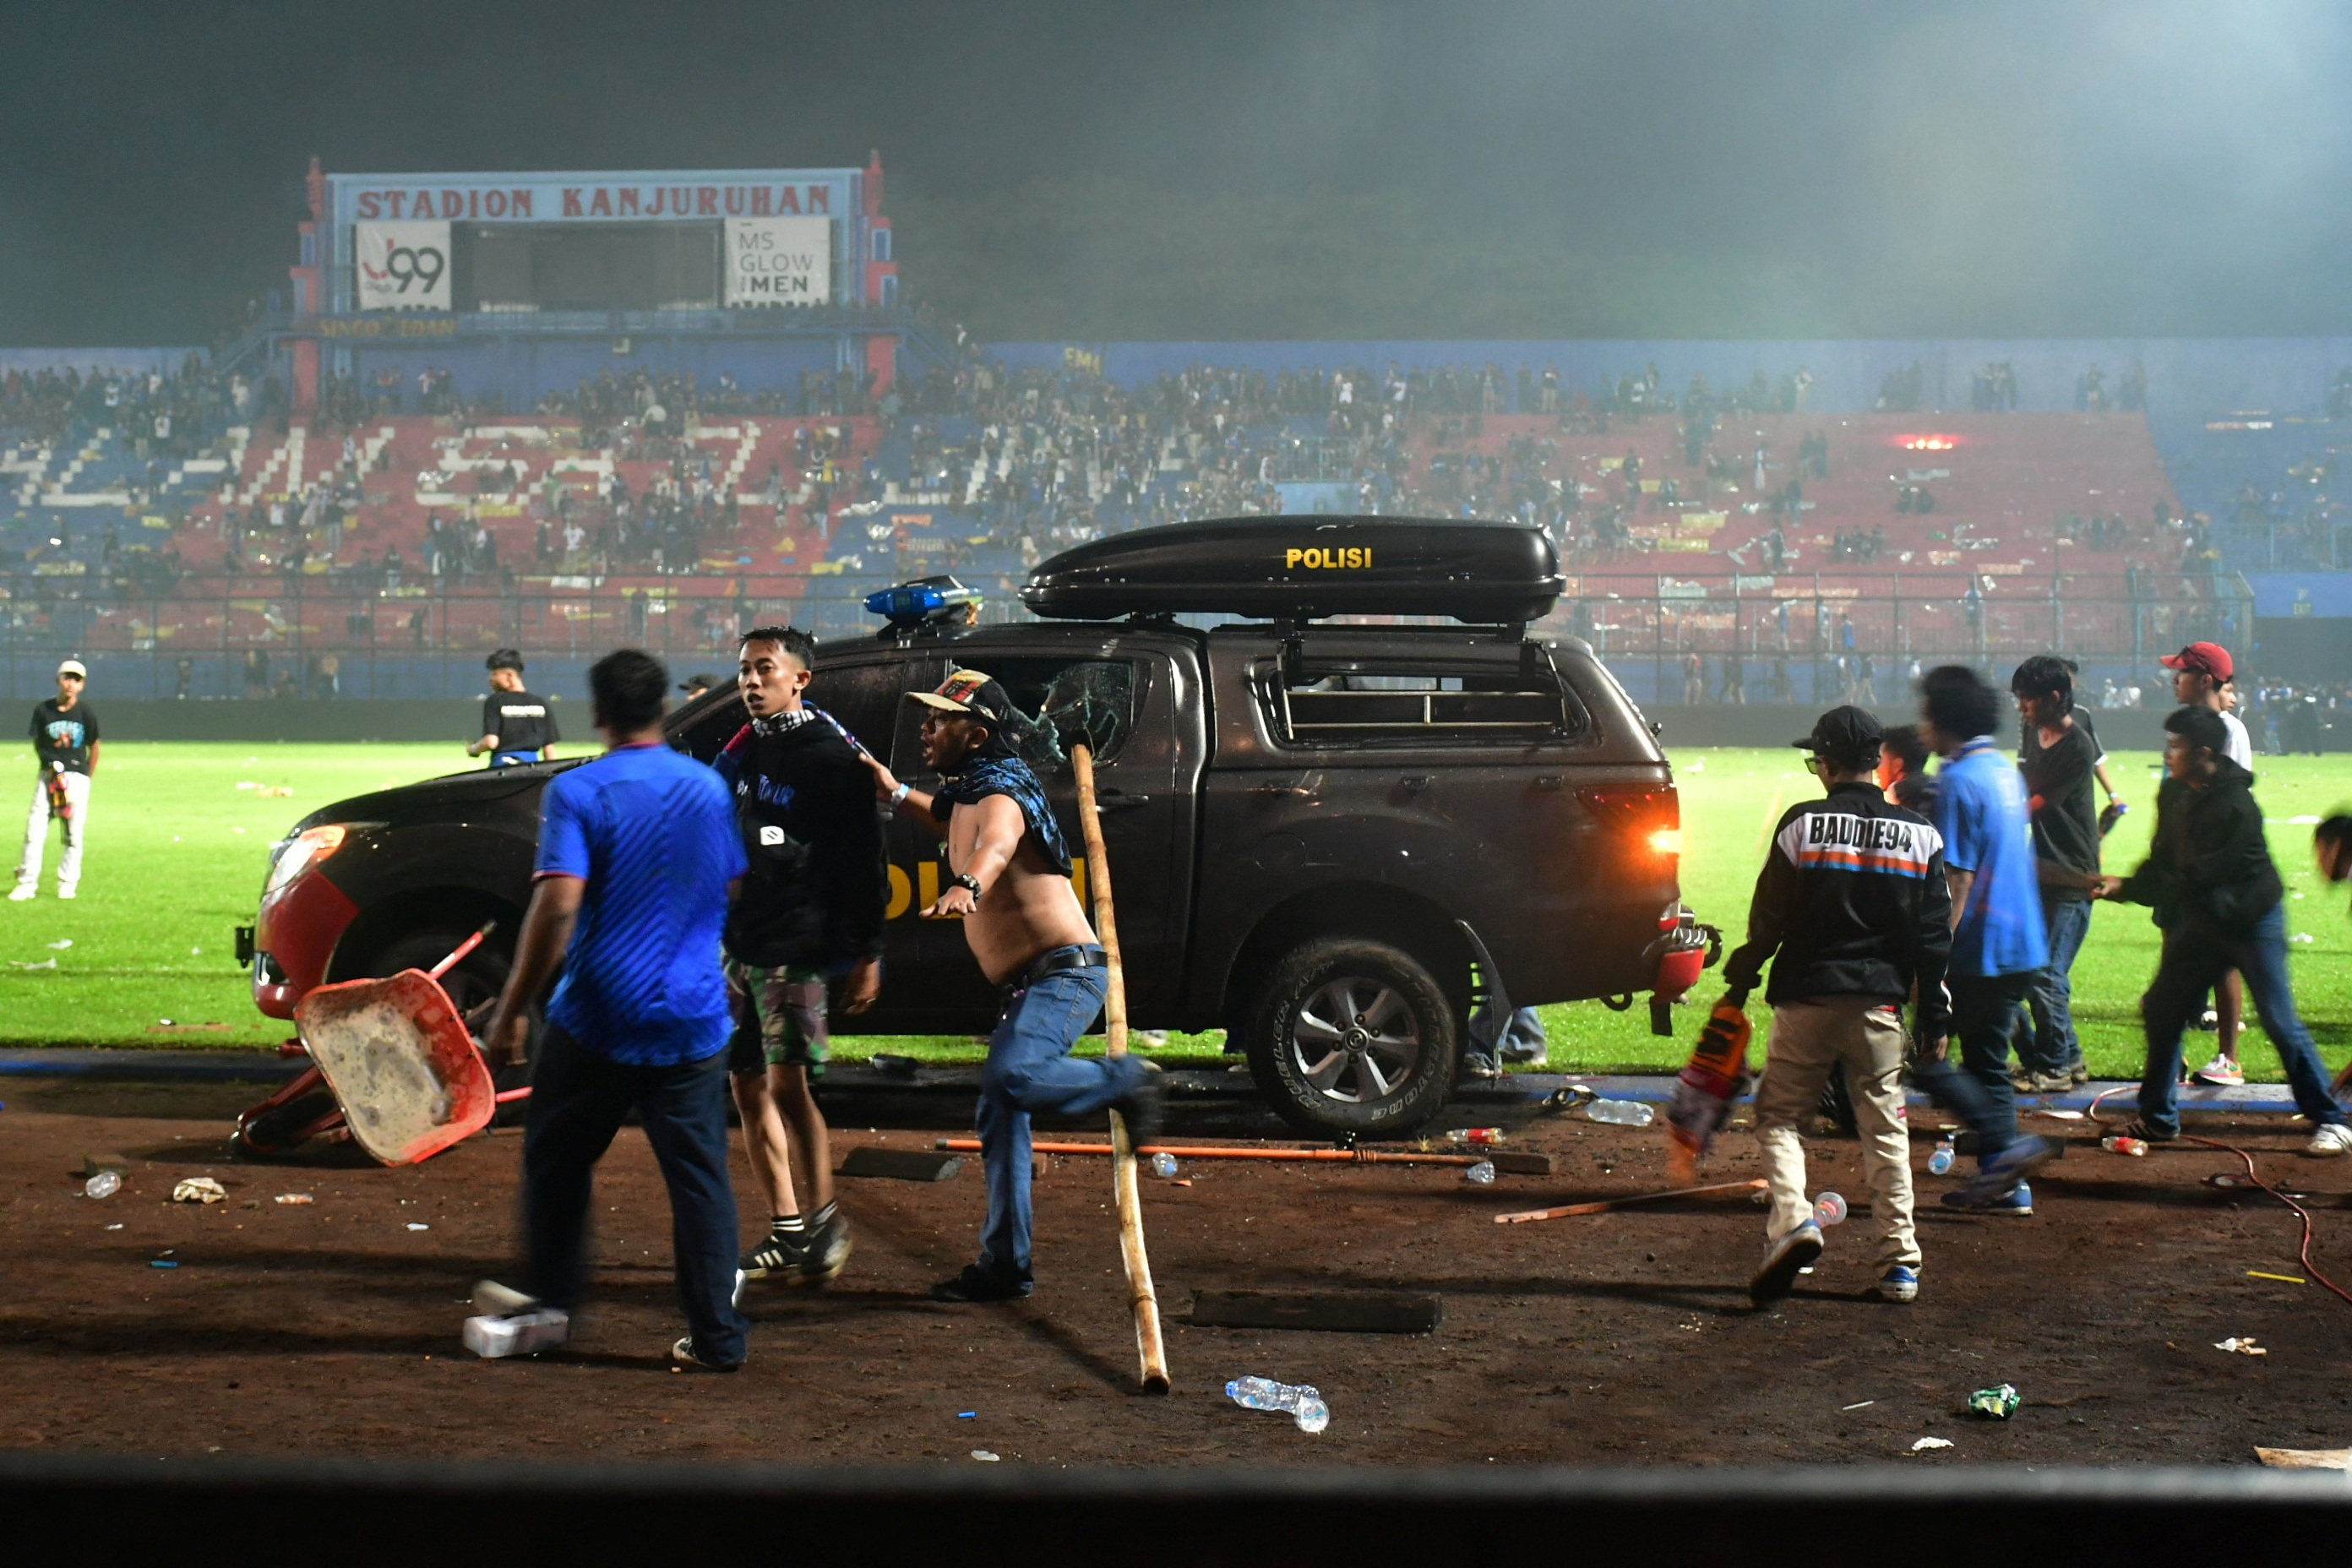 Stadion na kojem je poginulo 130 ljudi u Indoneziji će biti srušen